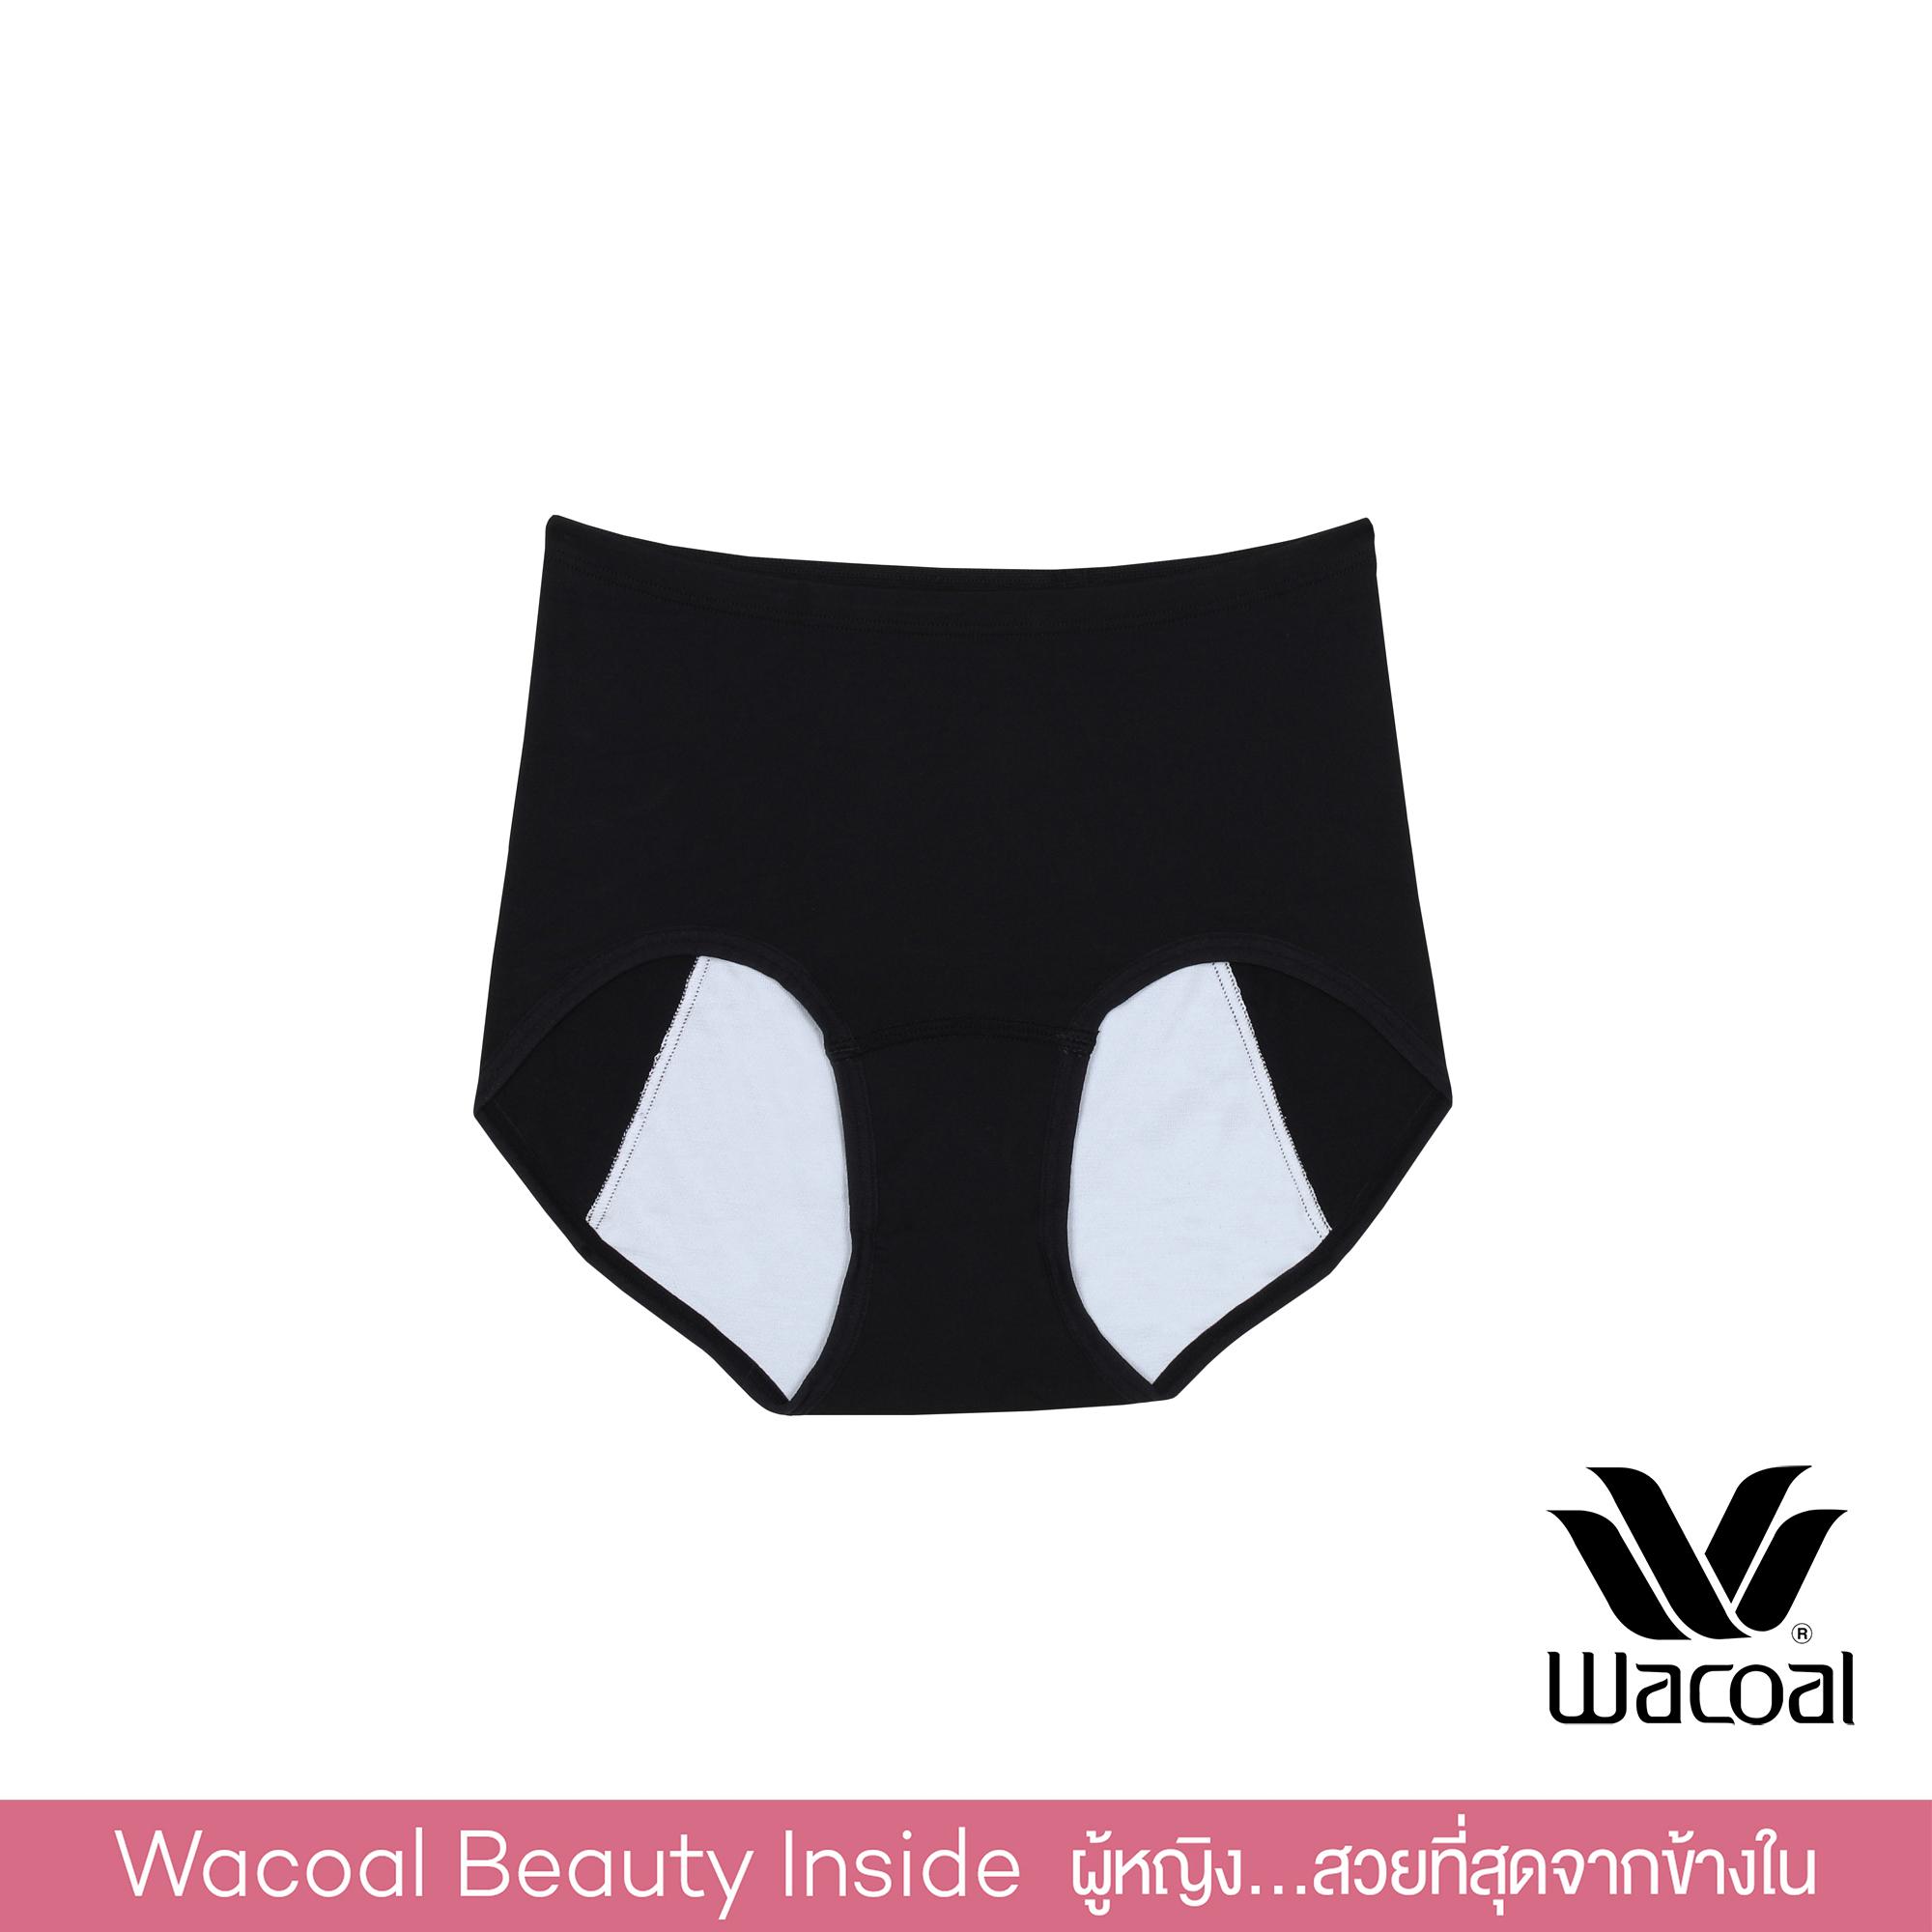 Wacoal Hygieni Night Short Panty กางเกงในอนามัย รูปแบบเต็มตัว - WU5041